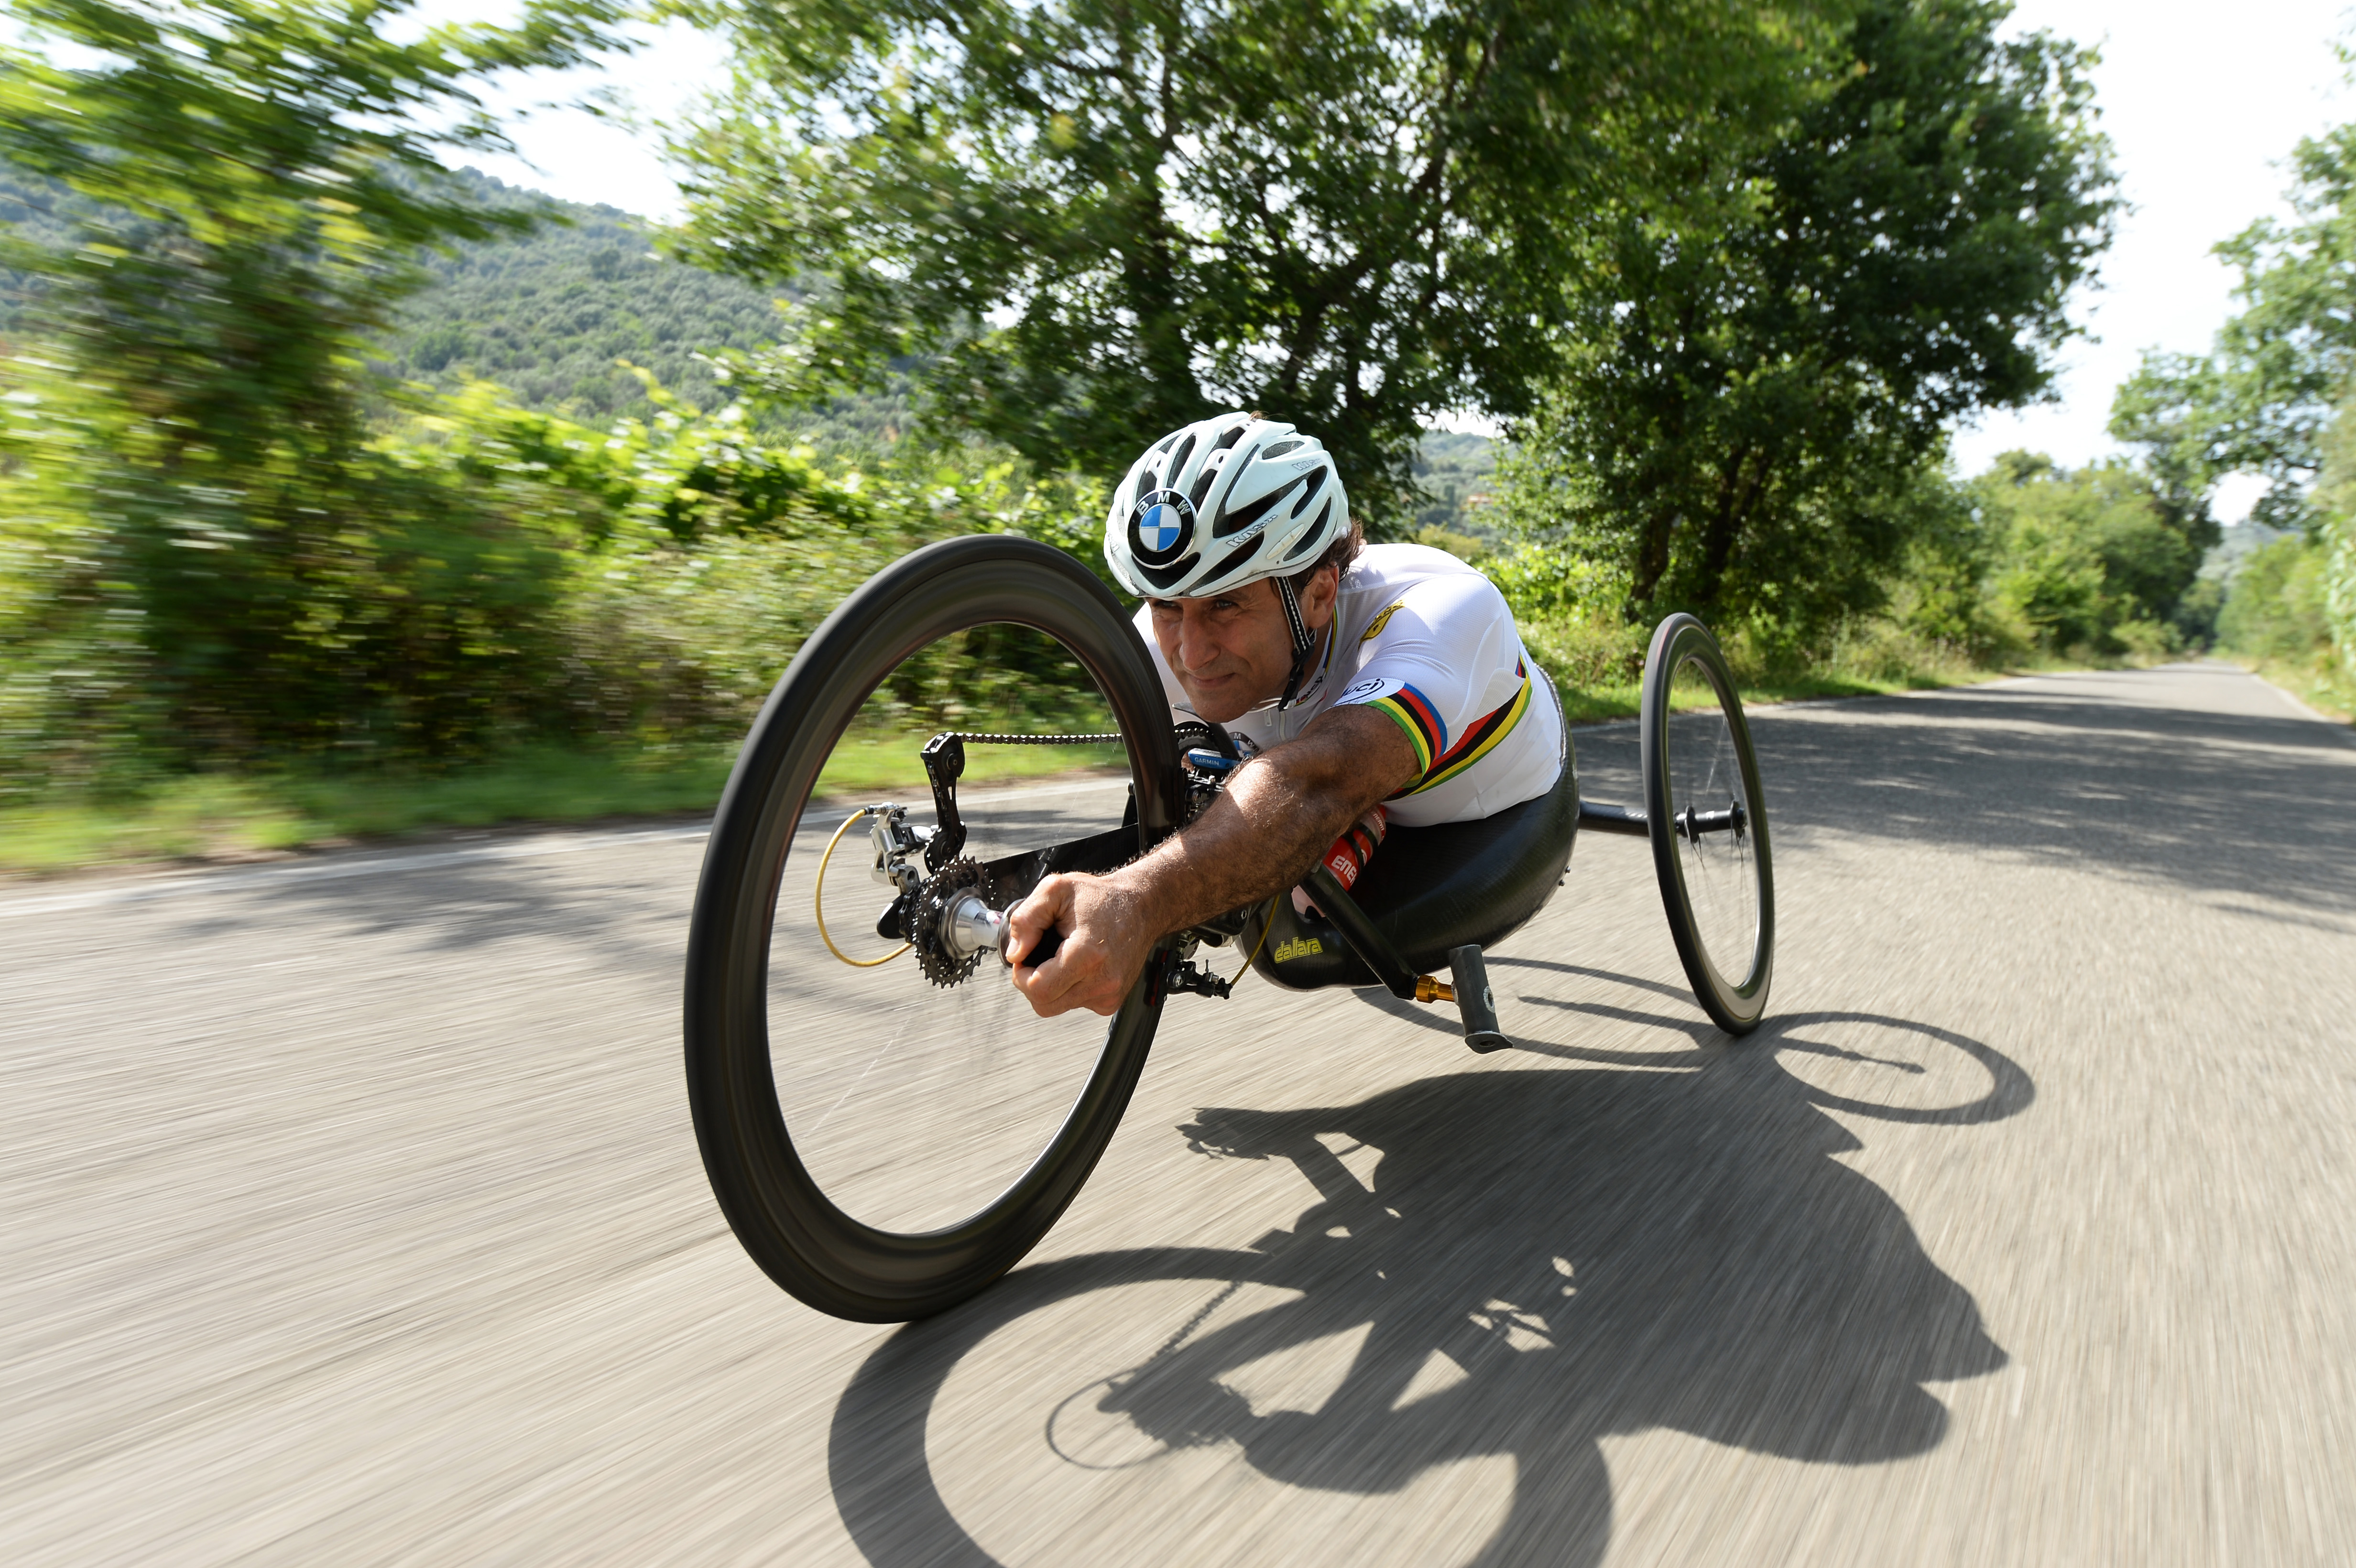  Para-Cycling World Championship in USA, la prossima tappa di Alessandro Zanardi